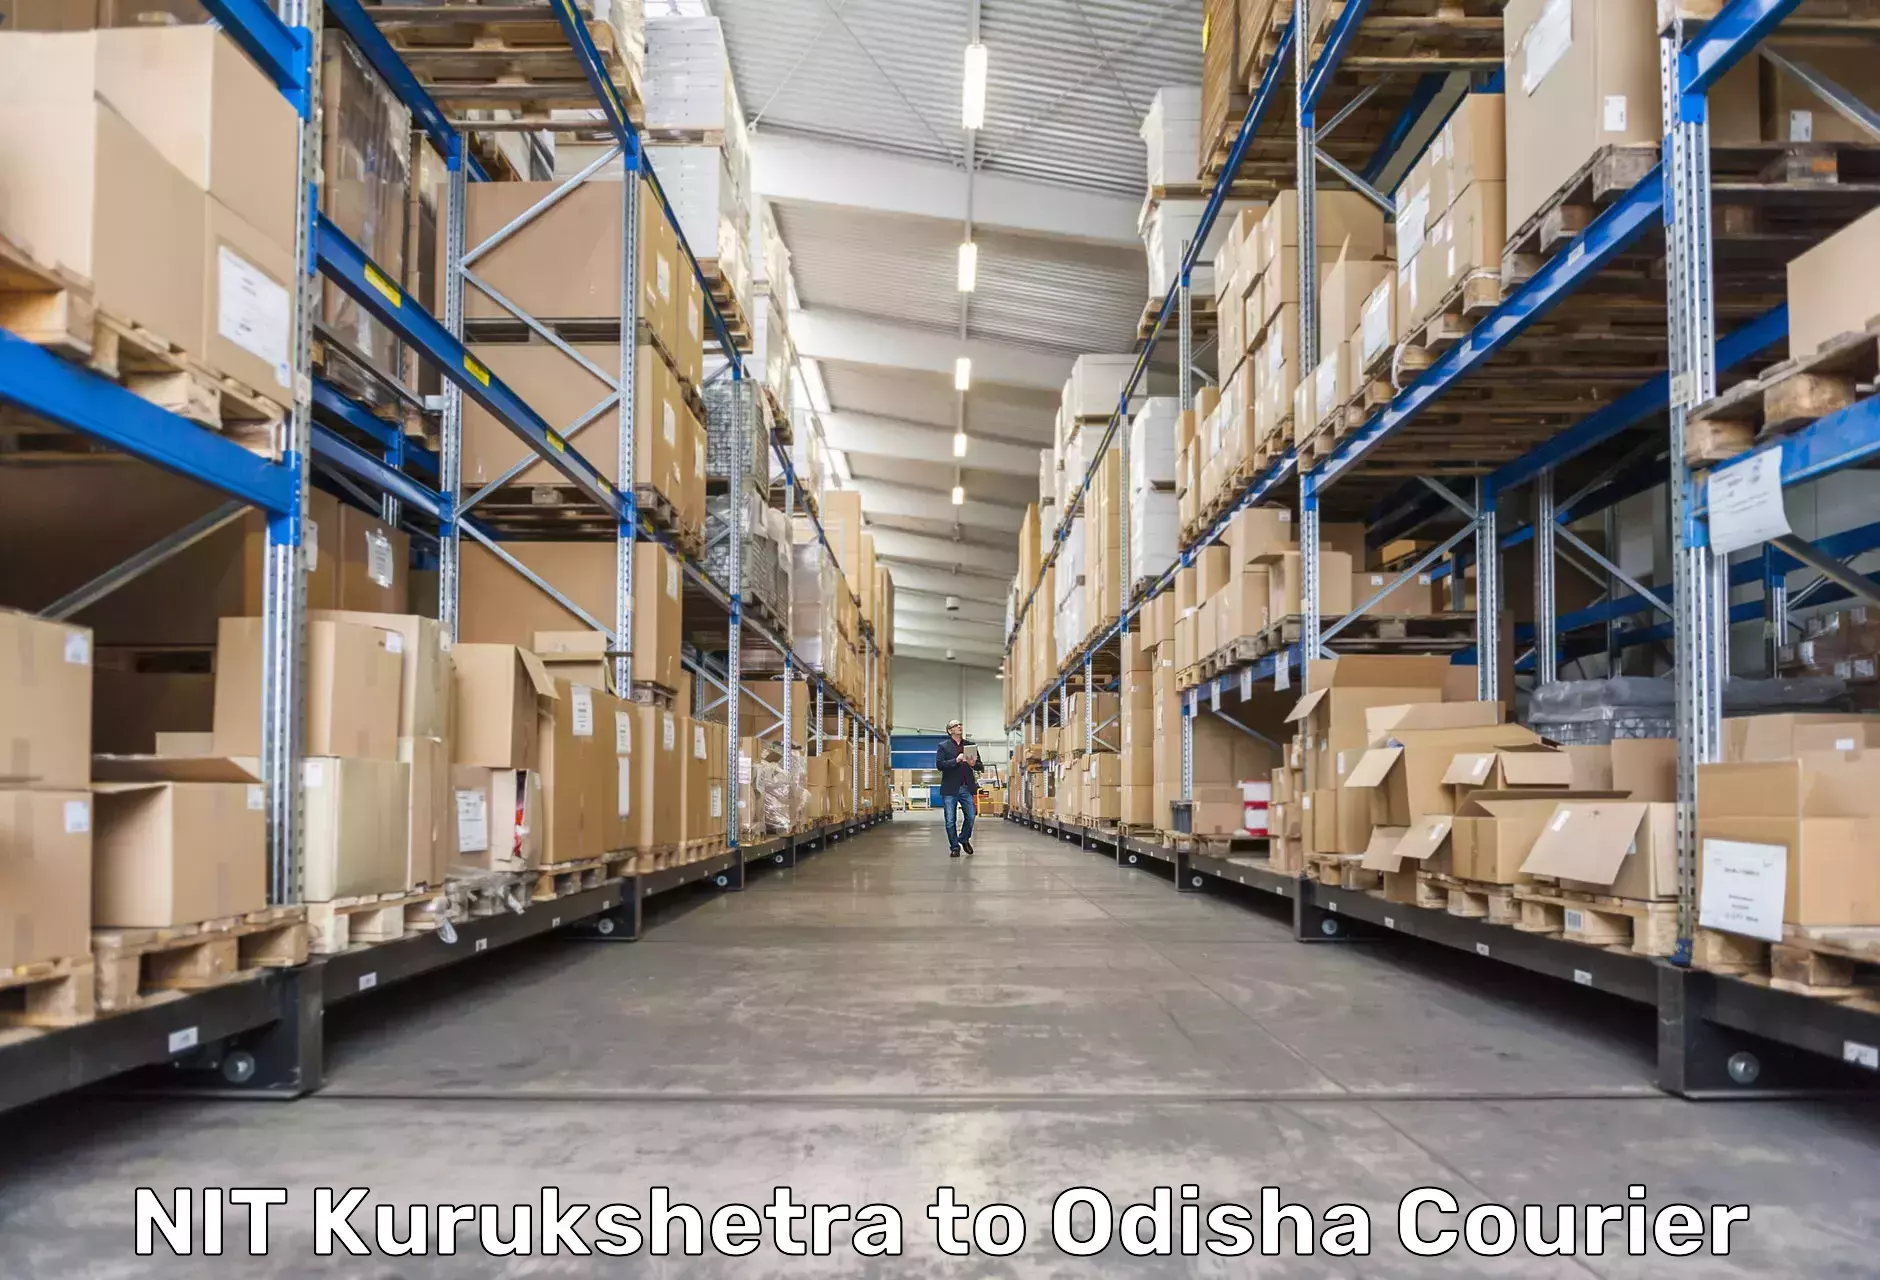 On-demand delivery in NIT Kurukshetra to Siksha O Anusandhan Bhubaneswar